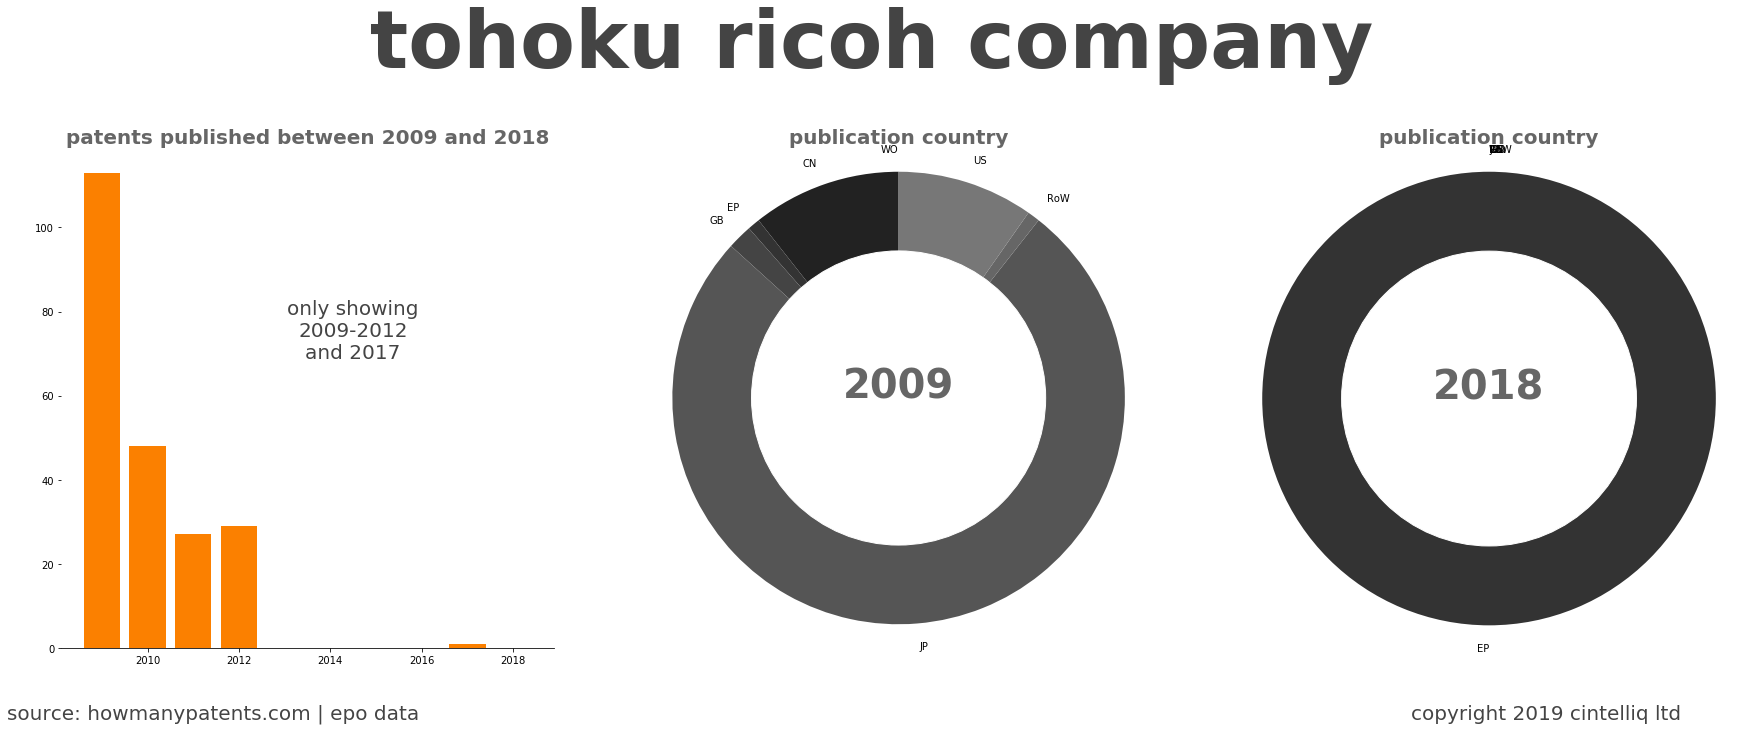 summary of patents for Tohoku Ricoh Company